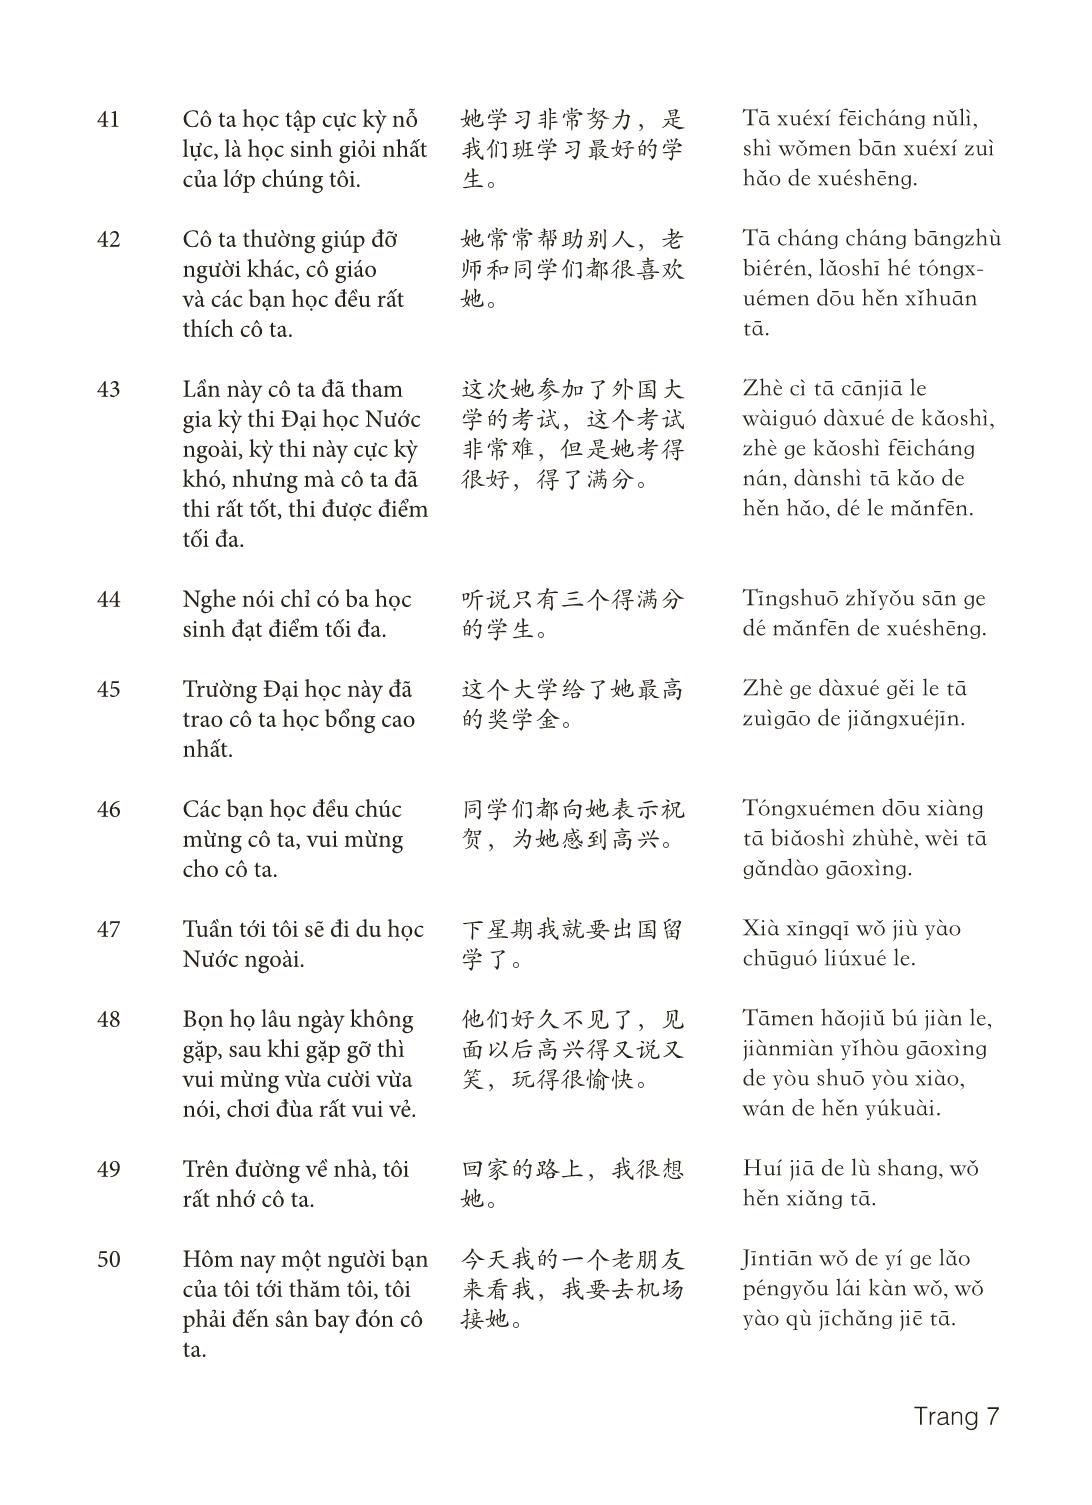 3000 Câu đàm thoại tiếng Hoa - Phần 9 trang 7